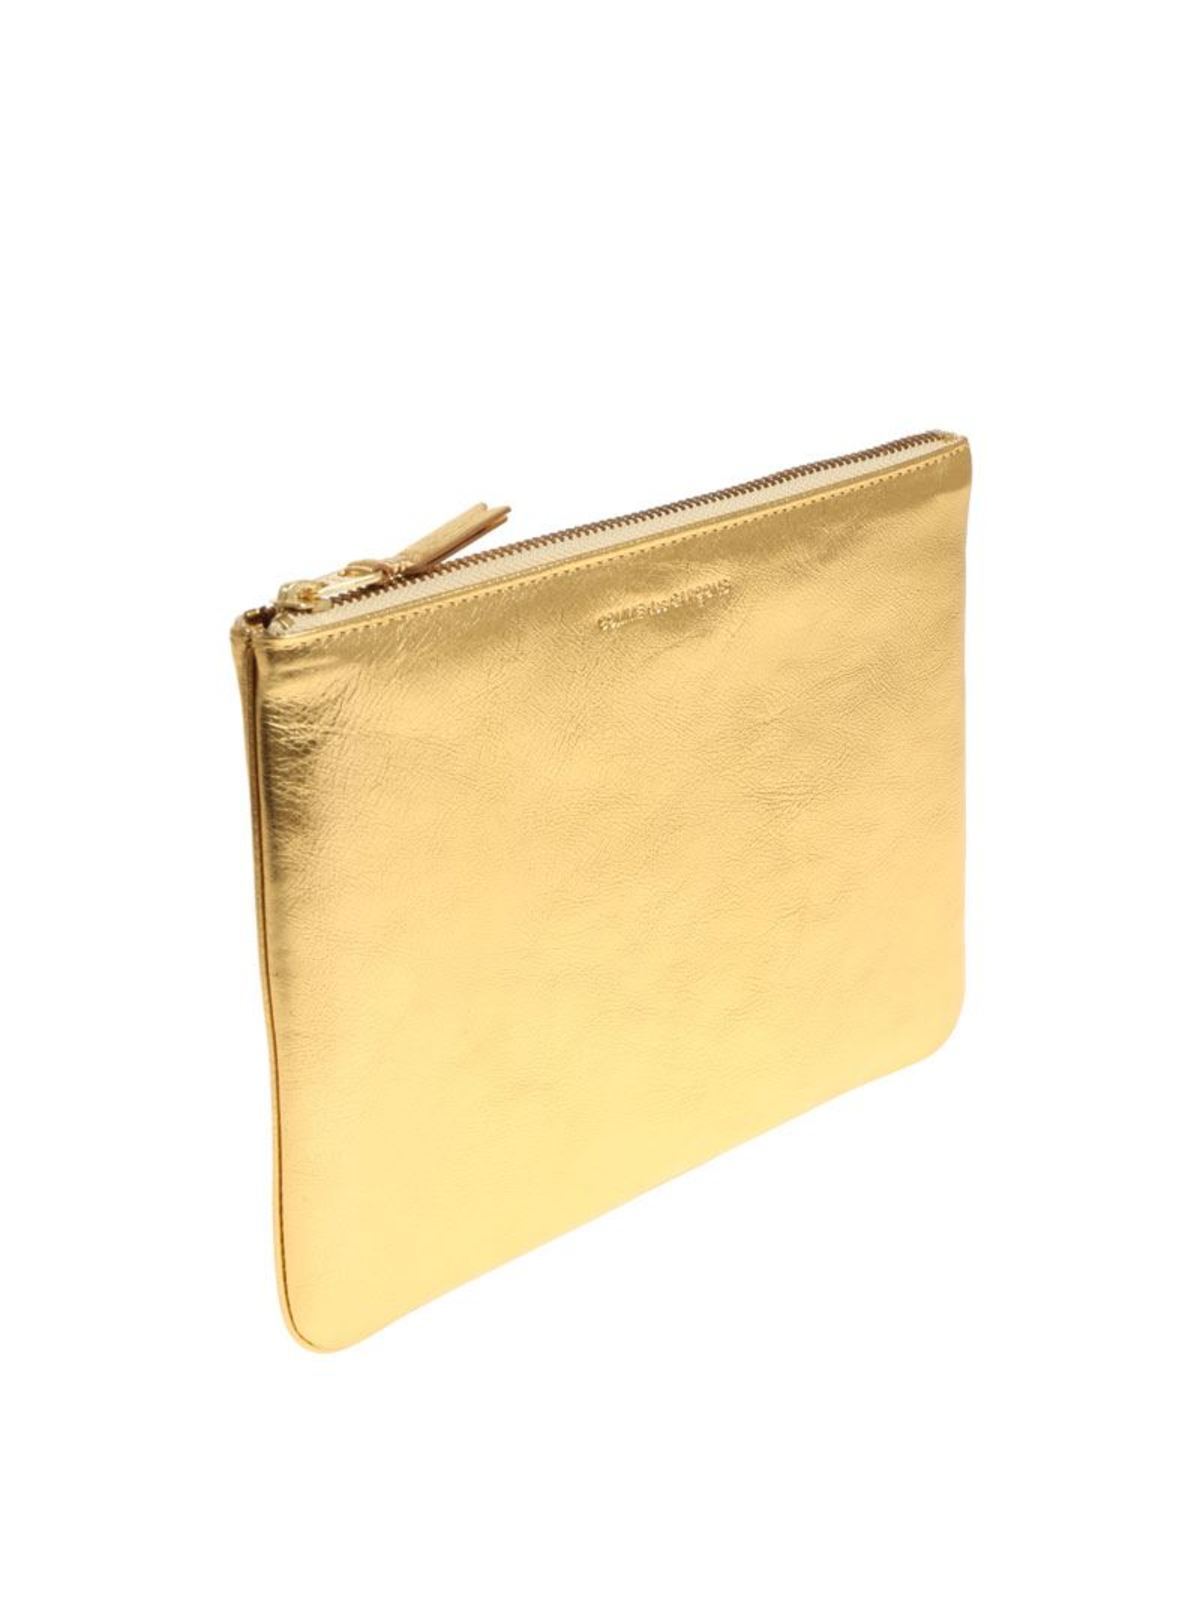 pijn Paradox Portiek Clutches Comme Des Garçons Wallet - Golden leather purse - SA5100GGOLD